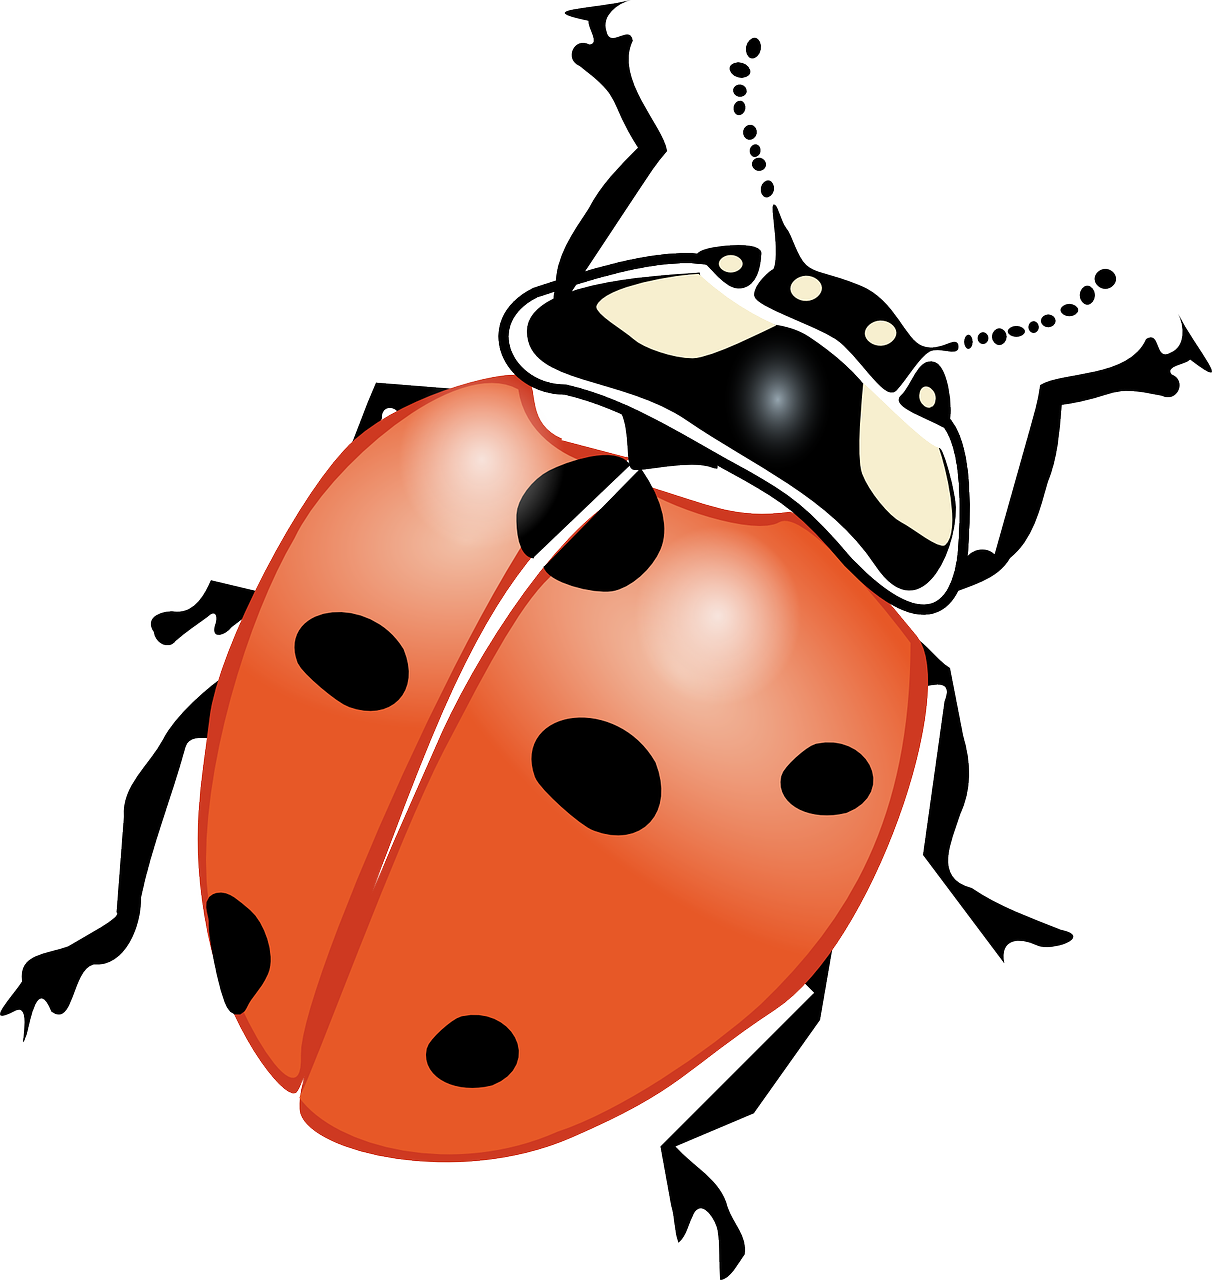 ladybeetle ladybird beetle ladybug free photo